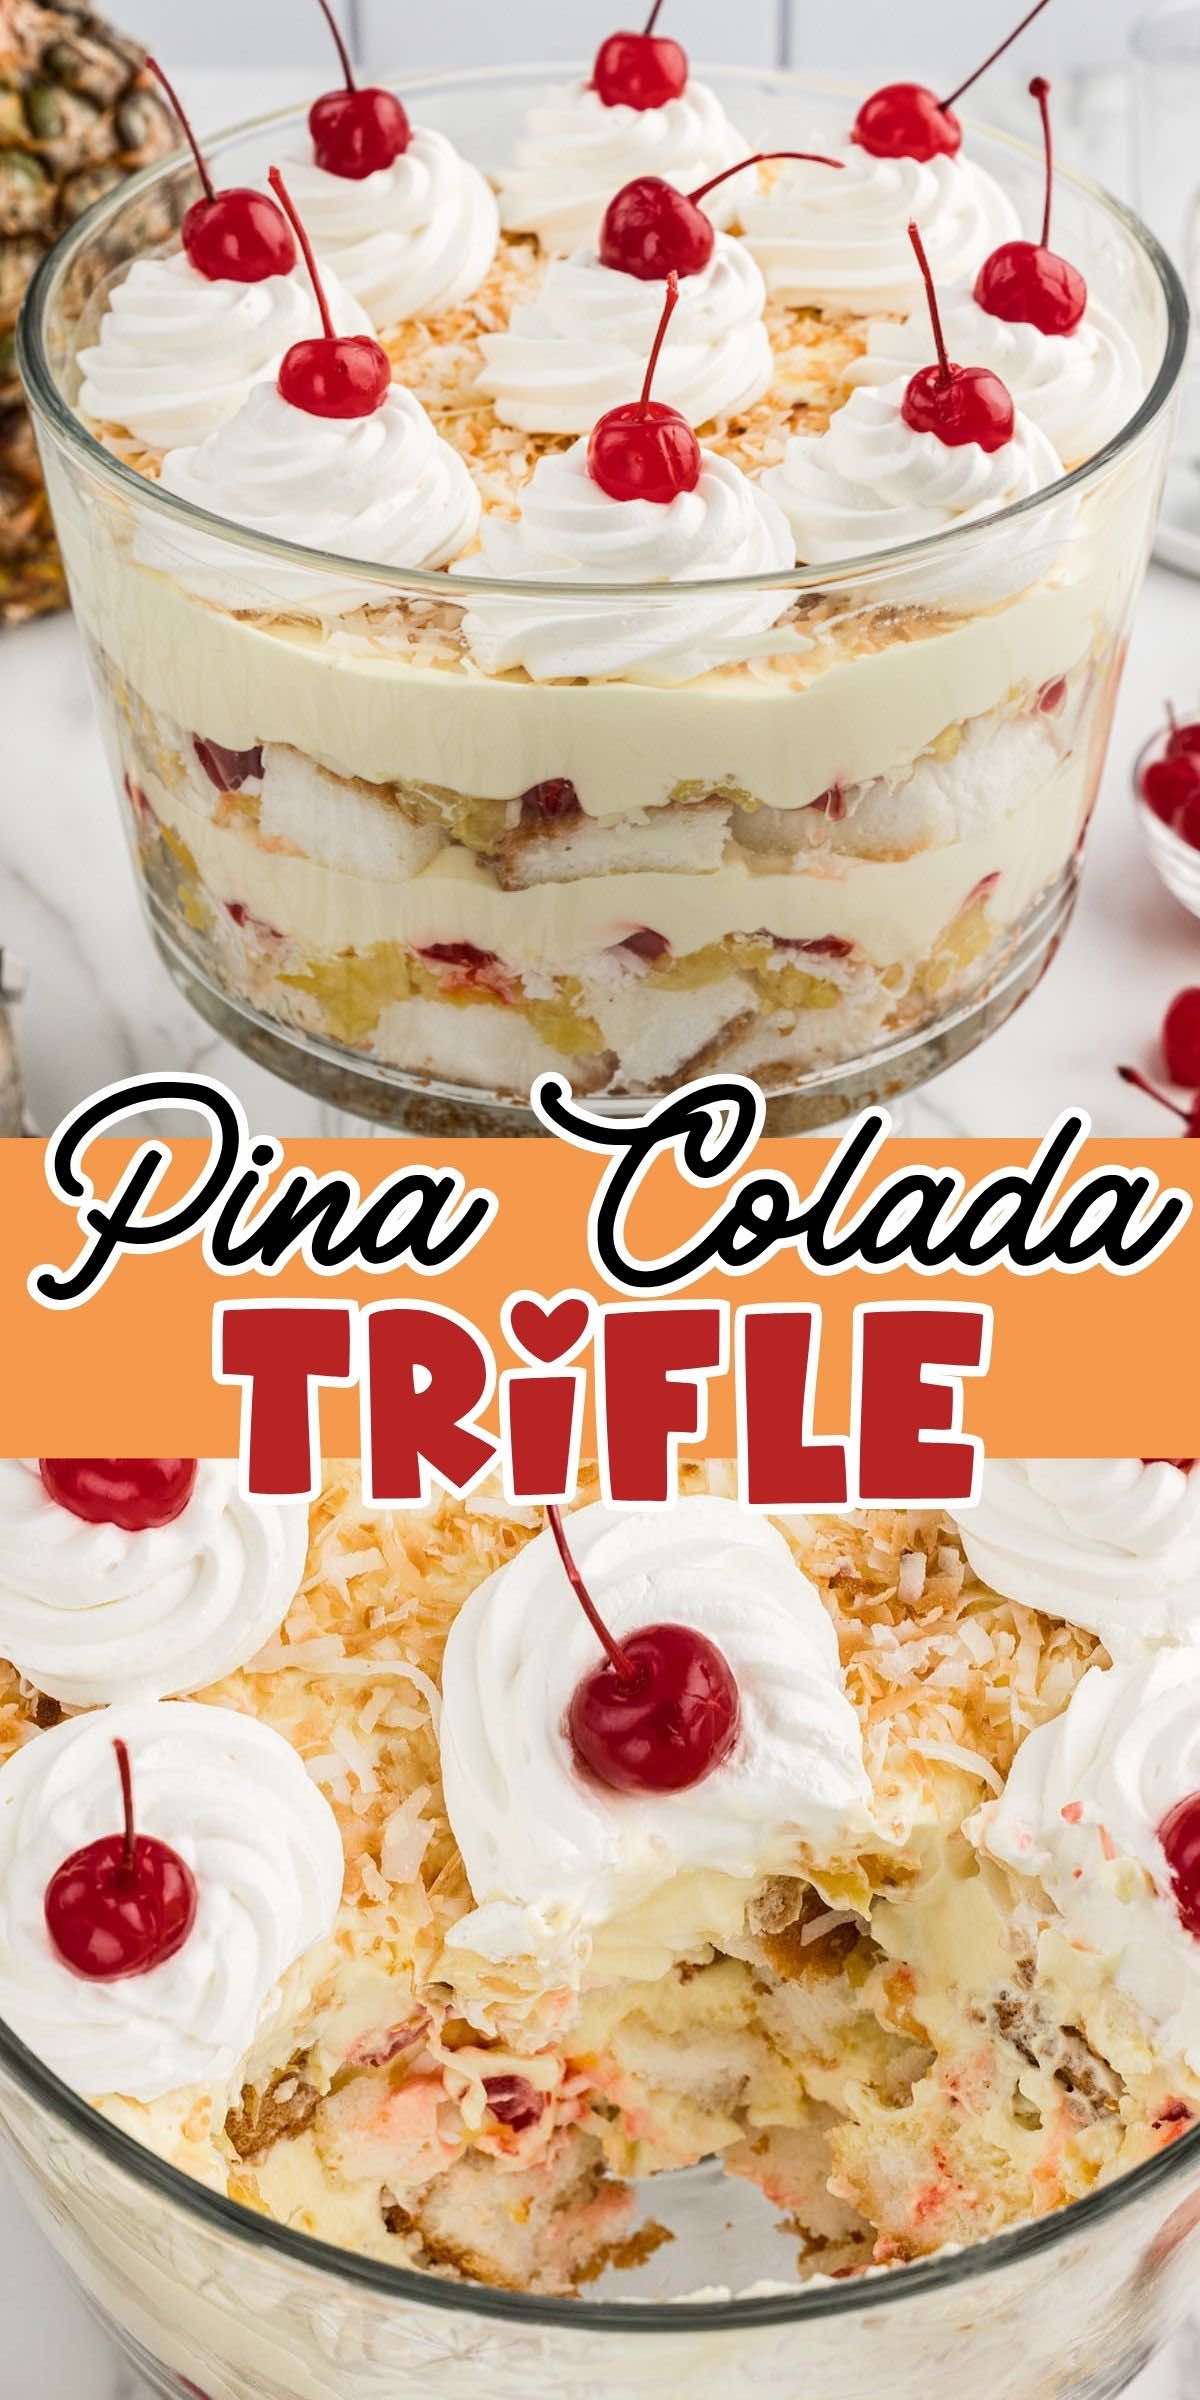 Pina Colada Trifle pins.